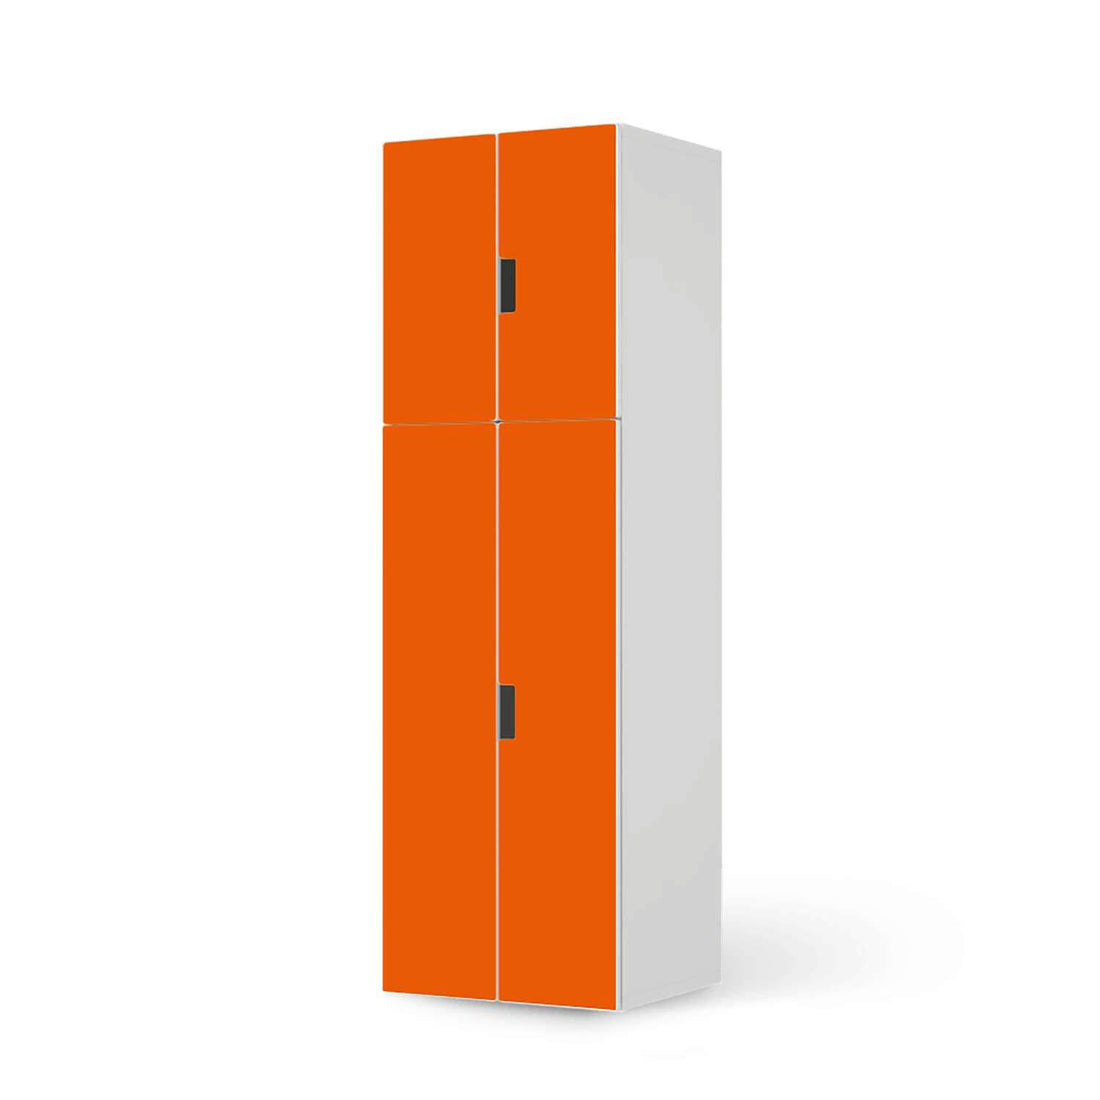 Selbstklebende Folie Orange Dark - IKEA Stuva kombiniert - 2 große Türen und 2 kleine Türen (Kombination 2)  - weiss